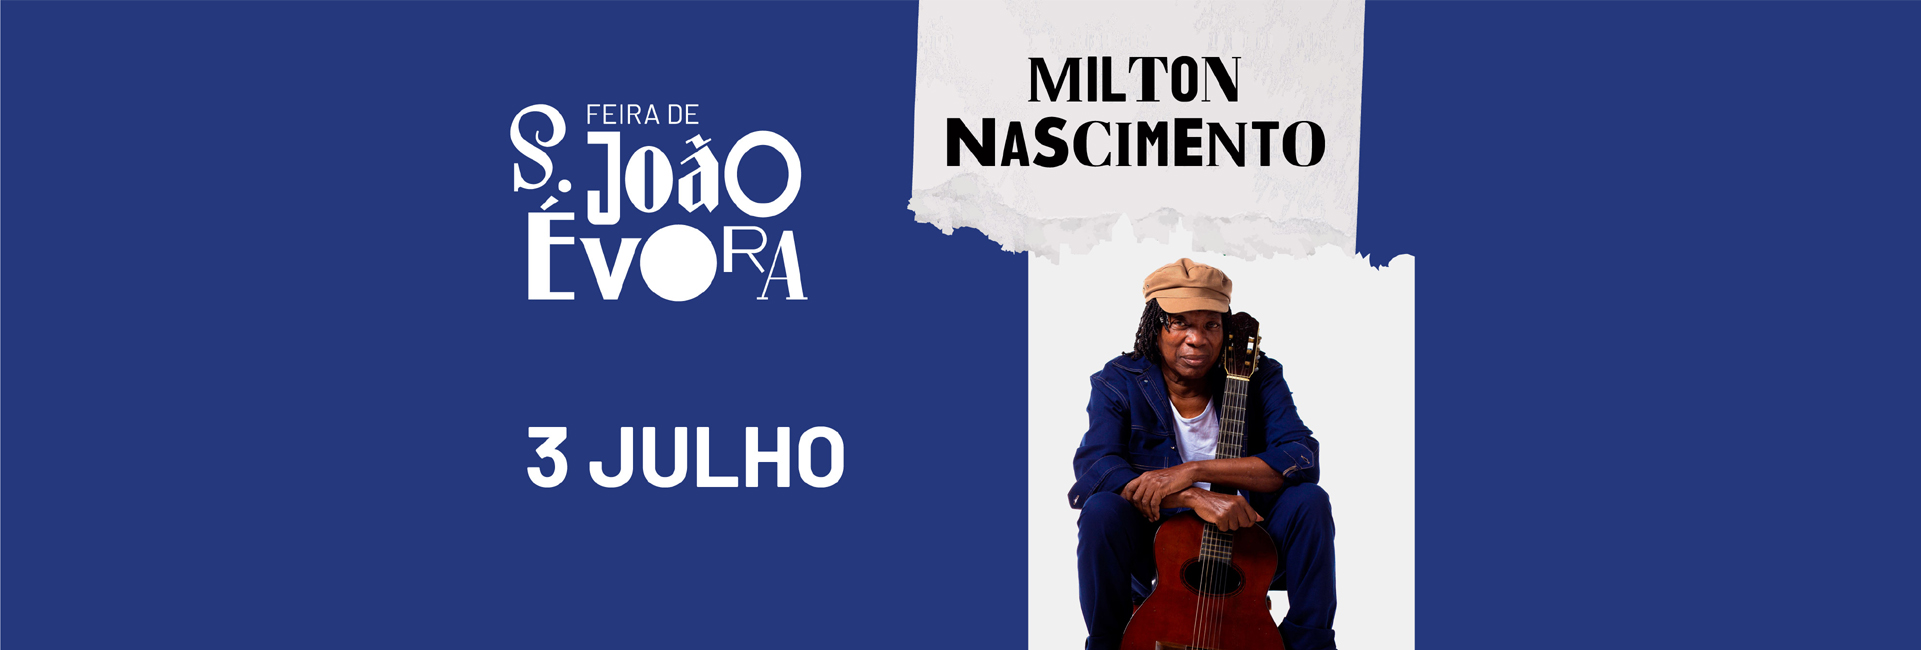 (Português) MILTON NASCIMENTO | Feira de S. João 2022